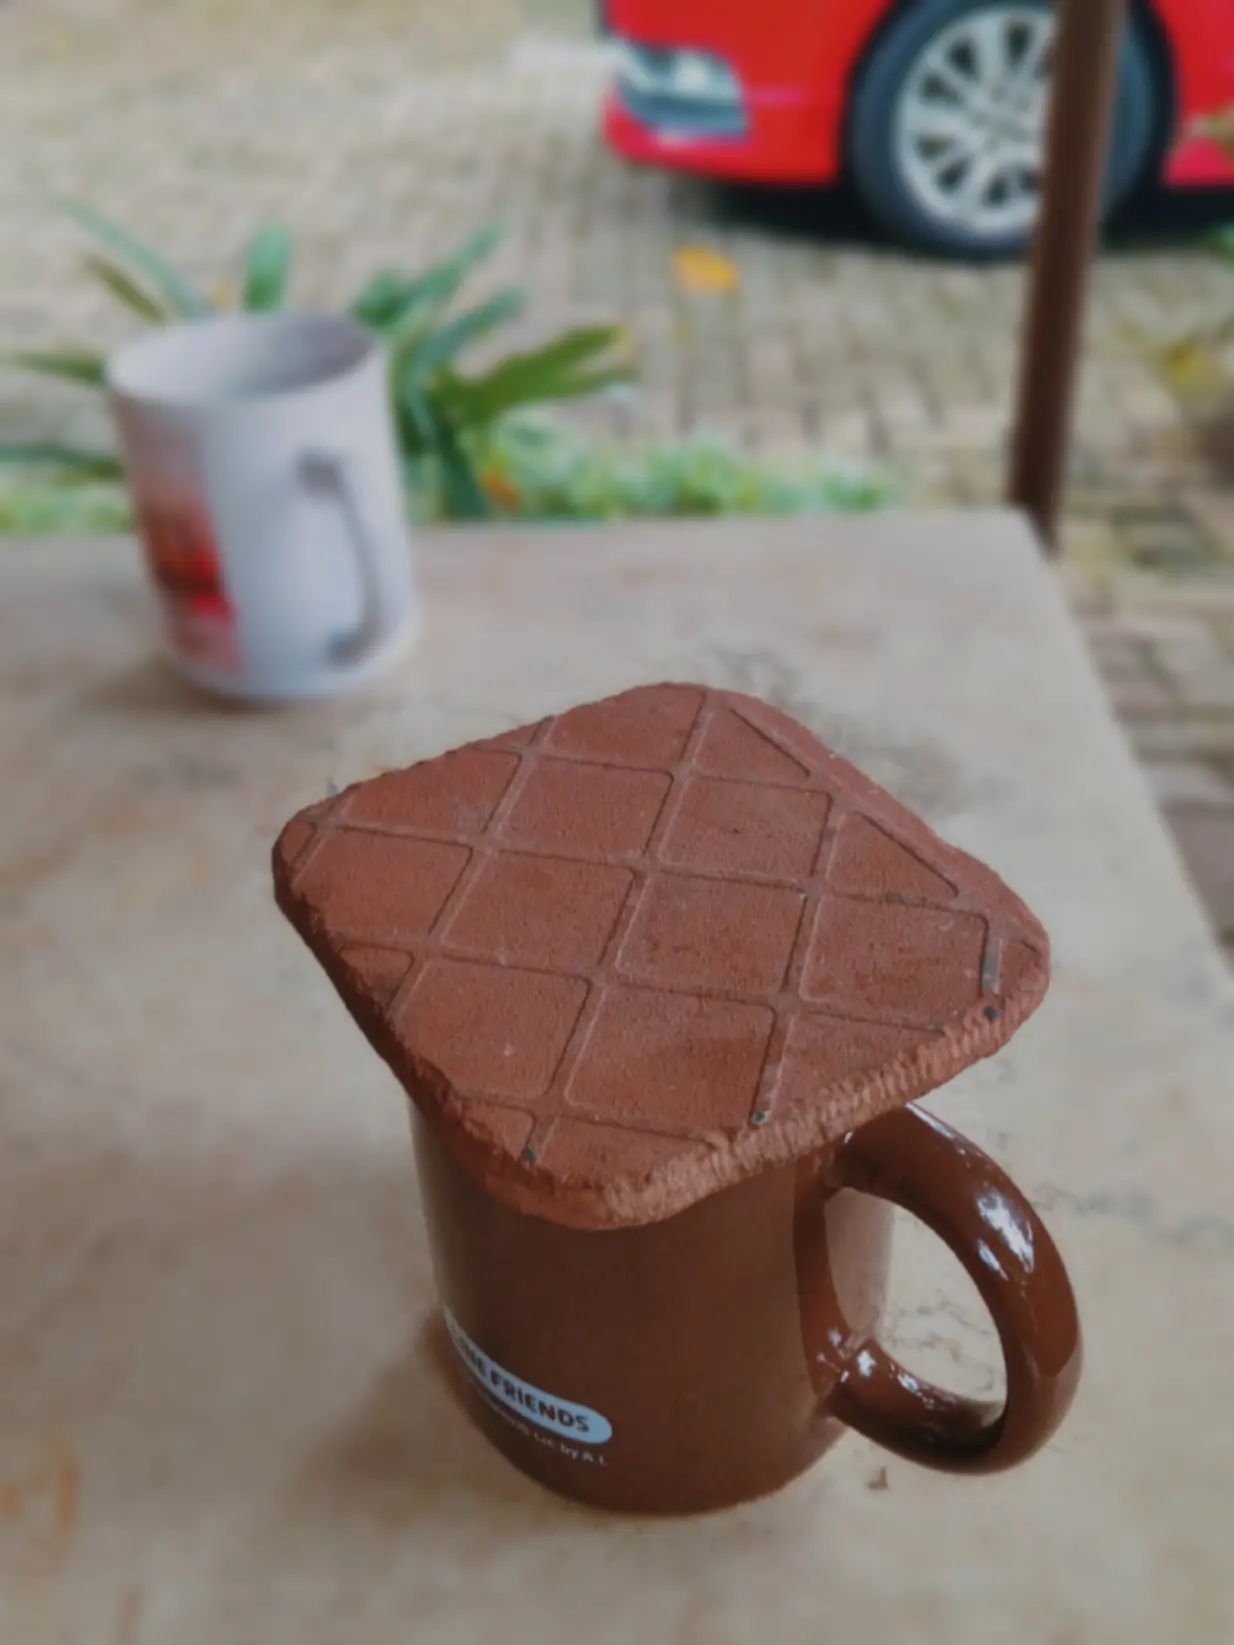 Biskuit cokelat keras di atas mug minuman di bawah pohon GKJ Pondokgede 